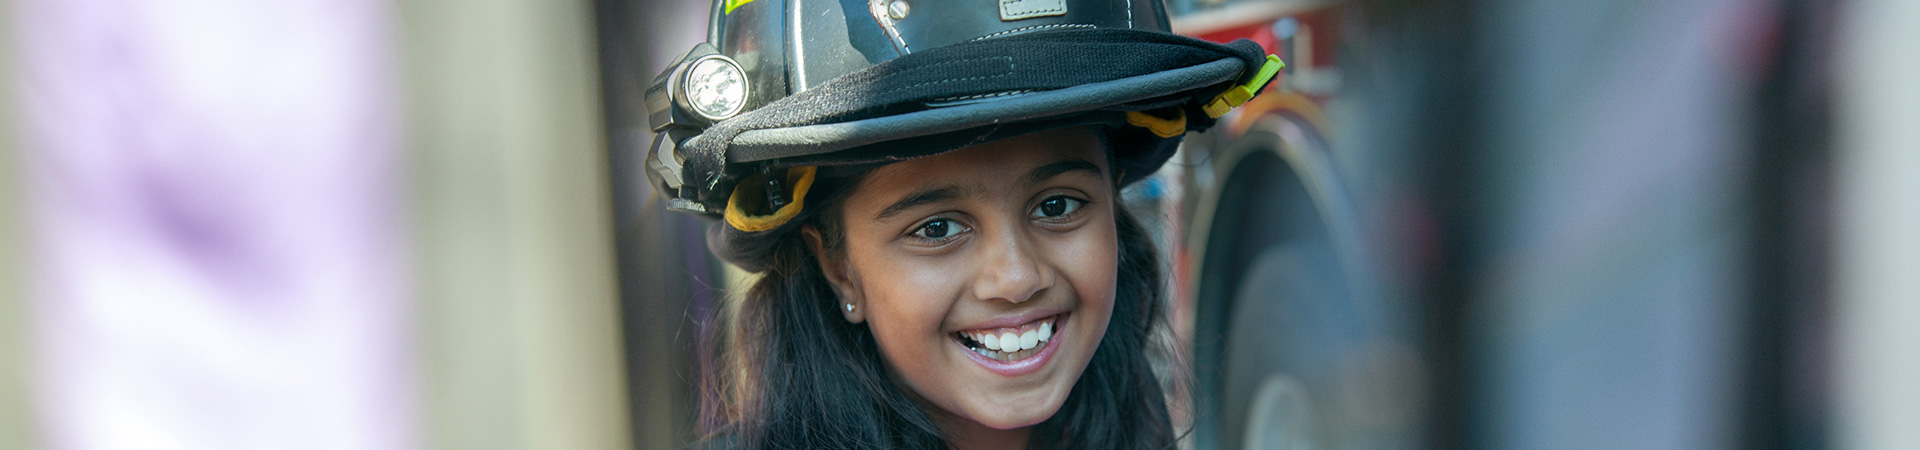  girl wearing a fire helmet 